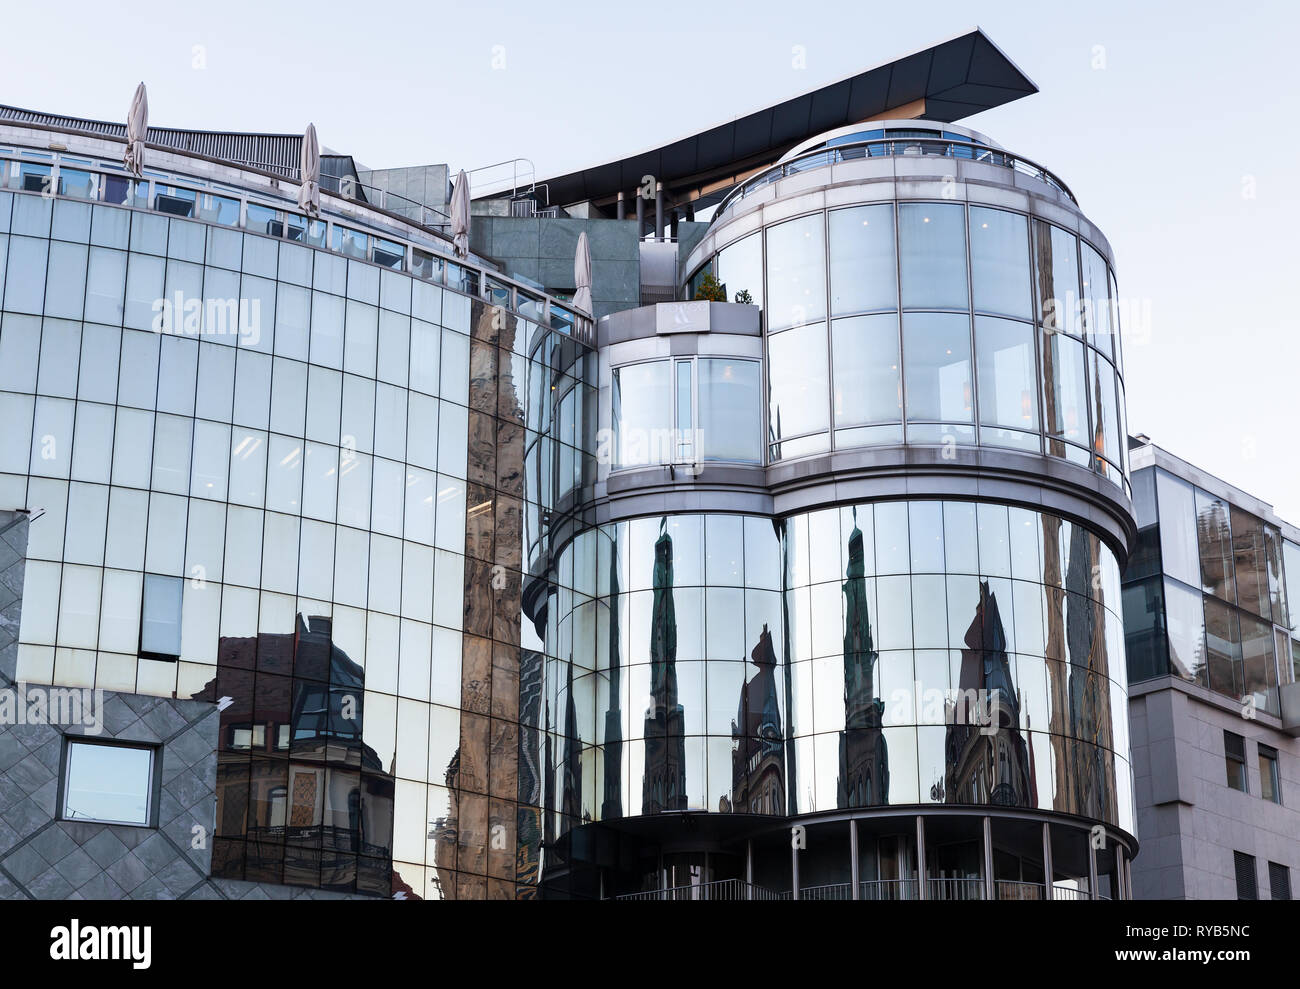 Vienne, Autriche - 2 novembre 2015 : Maison Haas, Vienne, la place Stephansplatz. Conçu par l'architecte autrichien Hans Hollein postmoderniste dans le sty Banque D'Images